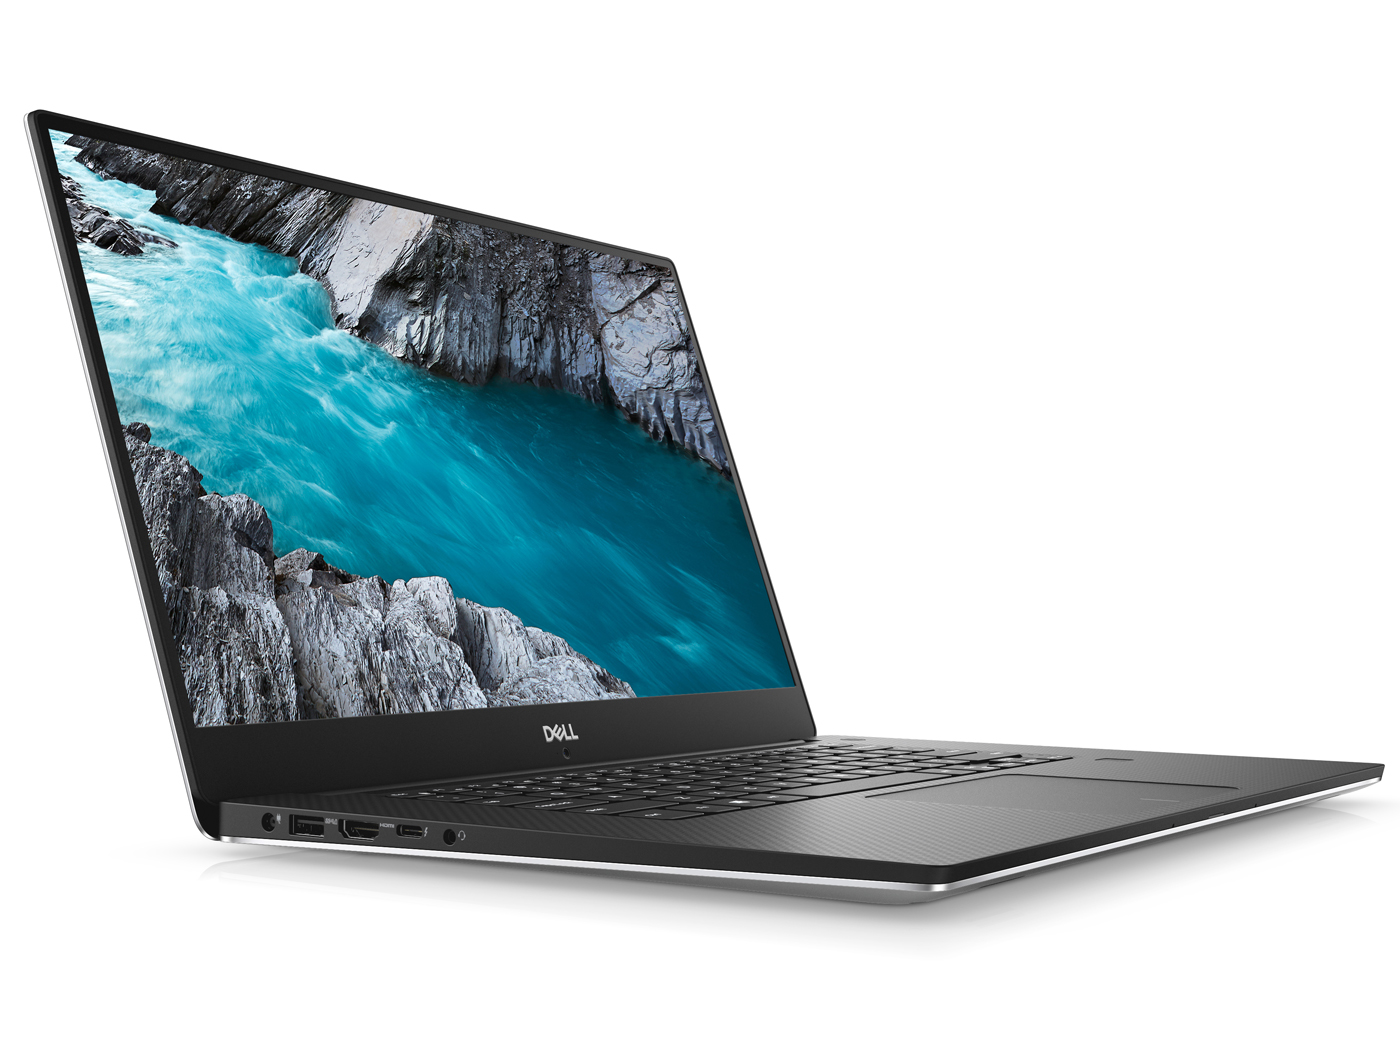 Dell Xps 15 9570 I7 Uhd Gtx 1050 Ti Max Q Laptop Review